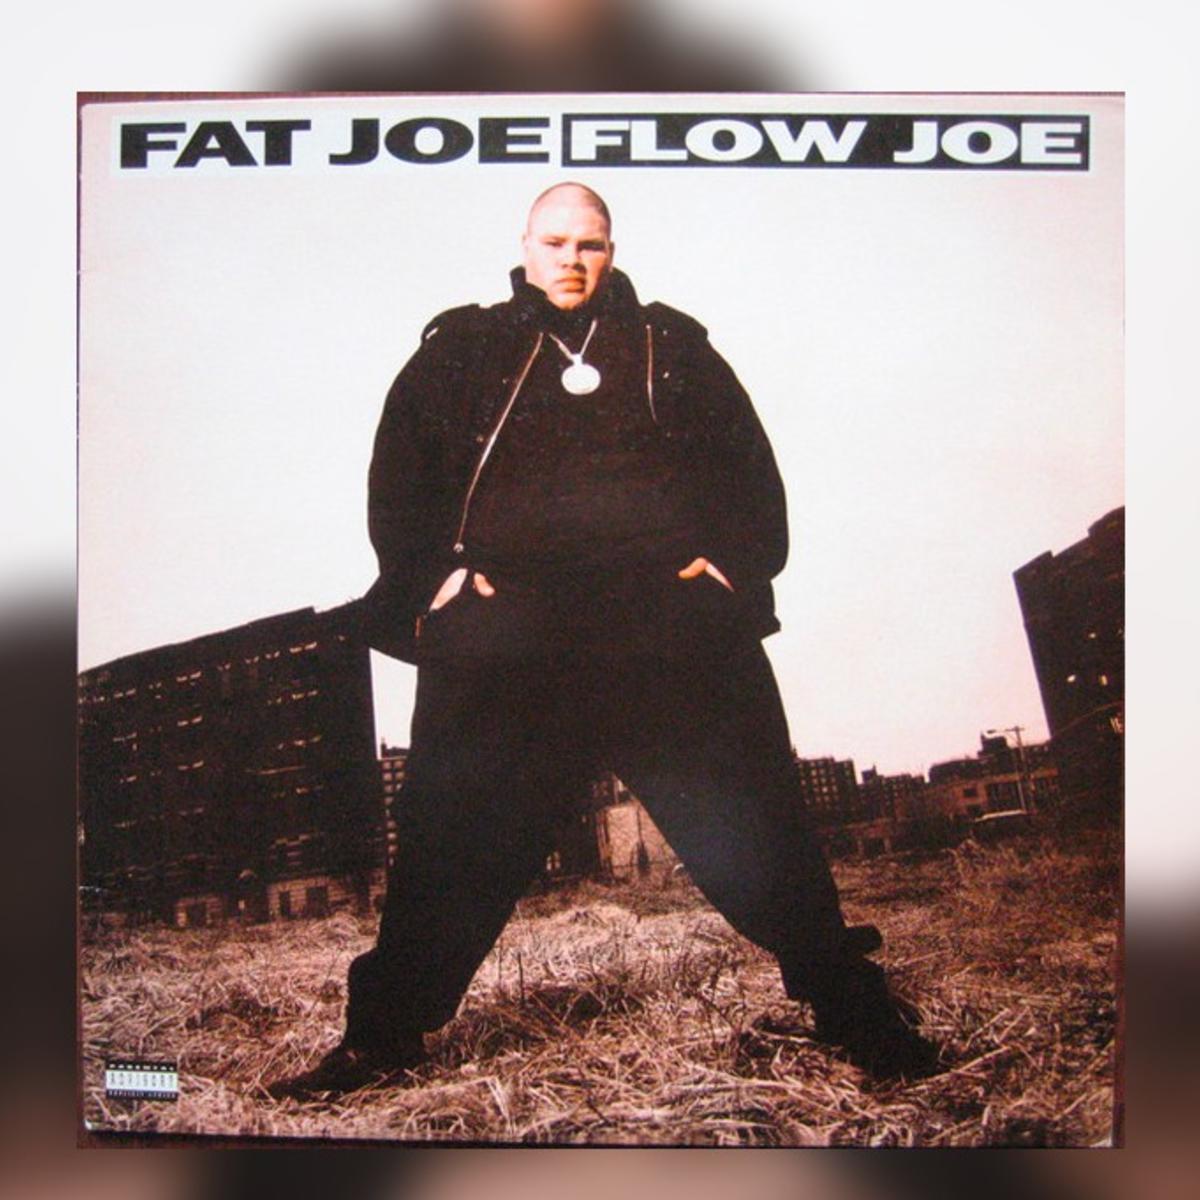 Fat Joe Flow Joe